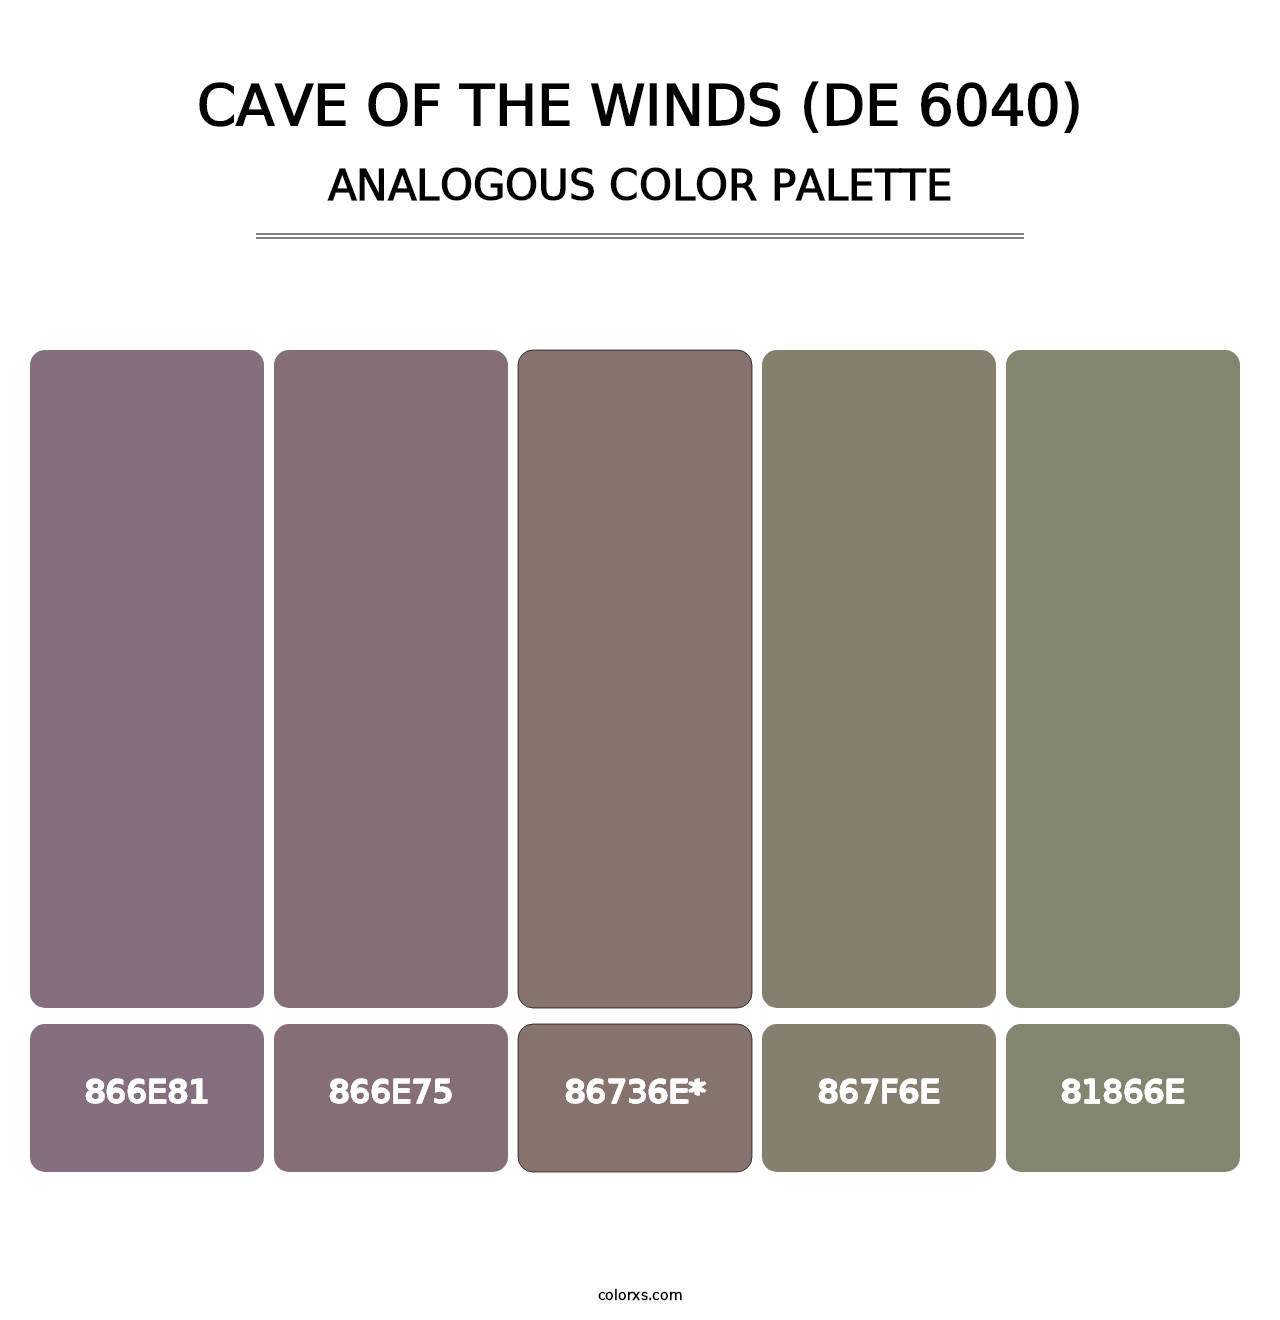 Cave of the Winds (DE 6040) - Analogous Color Palette